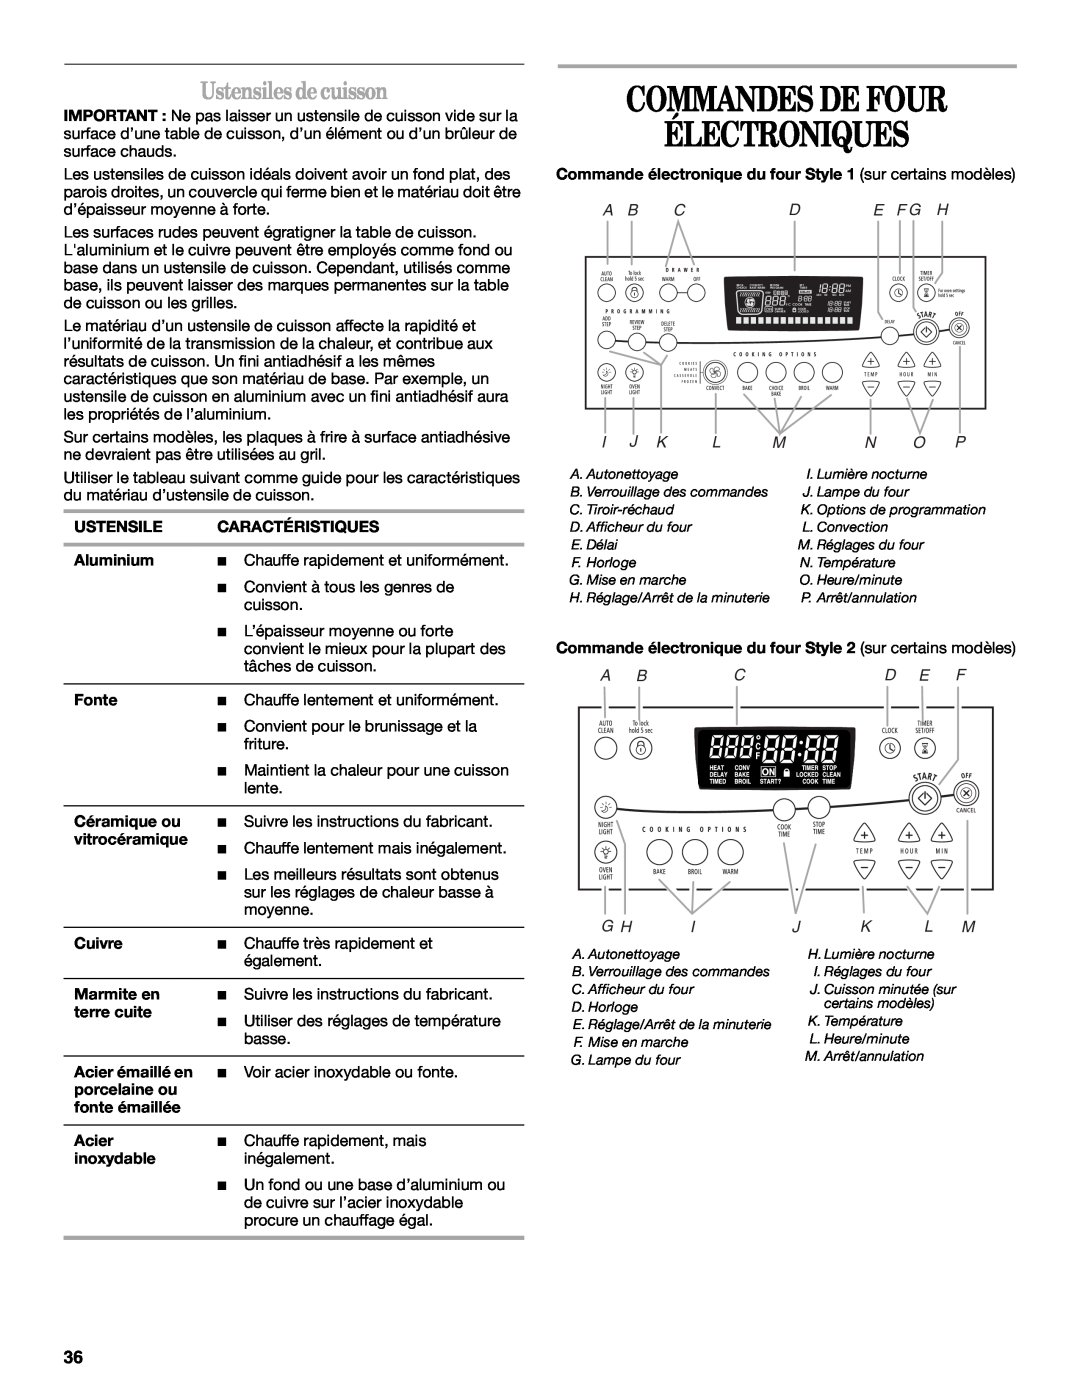 Whirlpool 9758899 manual Commandes De Four Électroniques, Ustensiles decuisson, I J K, A Bcd E F, J K L M 